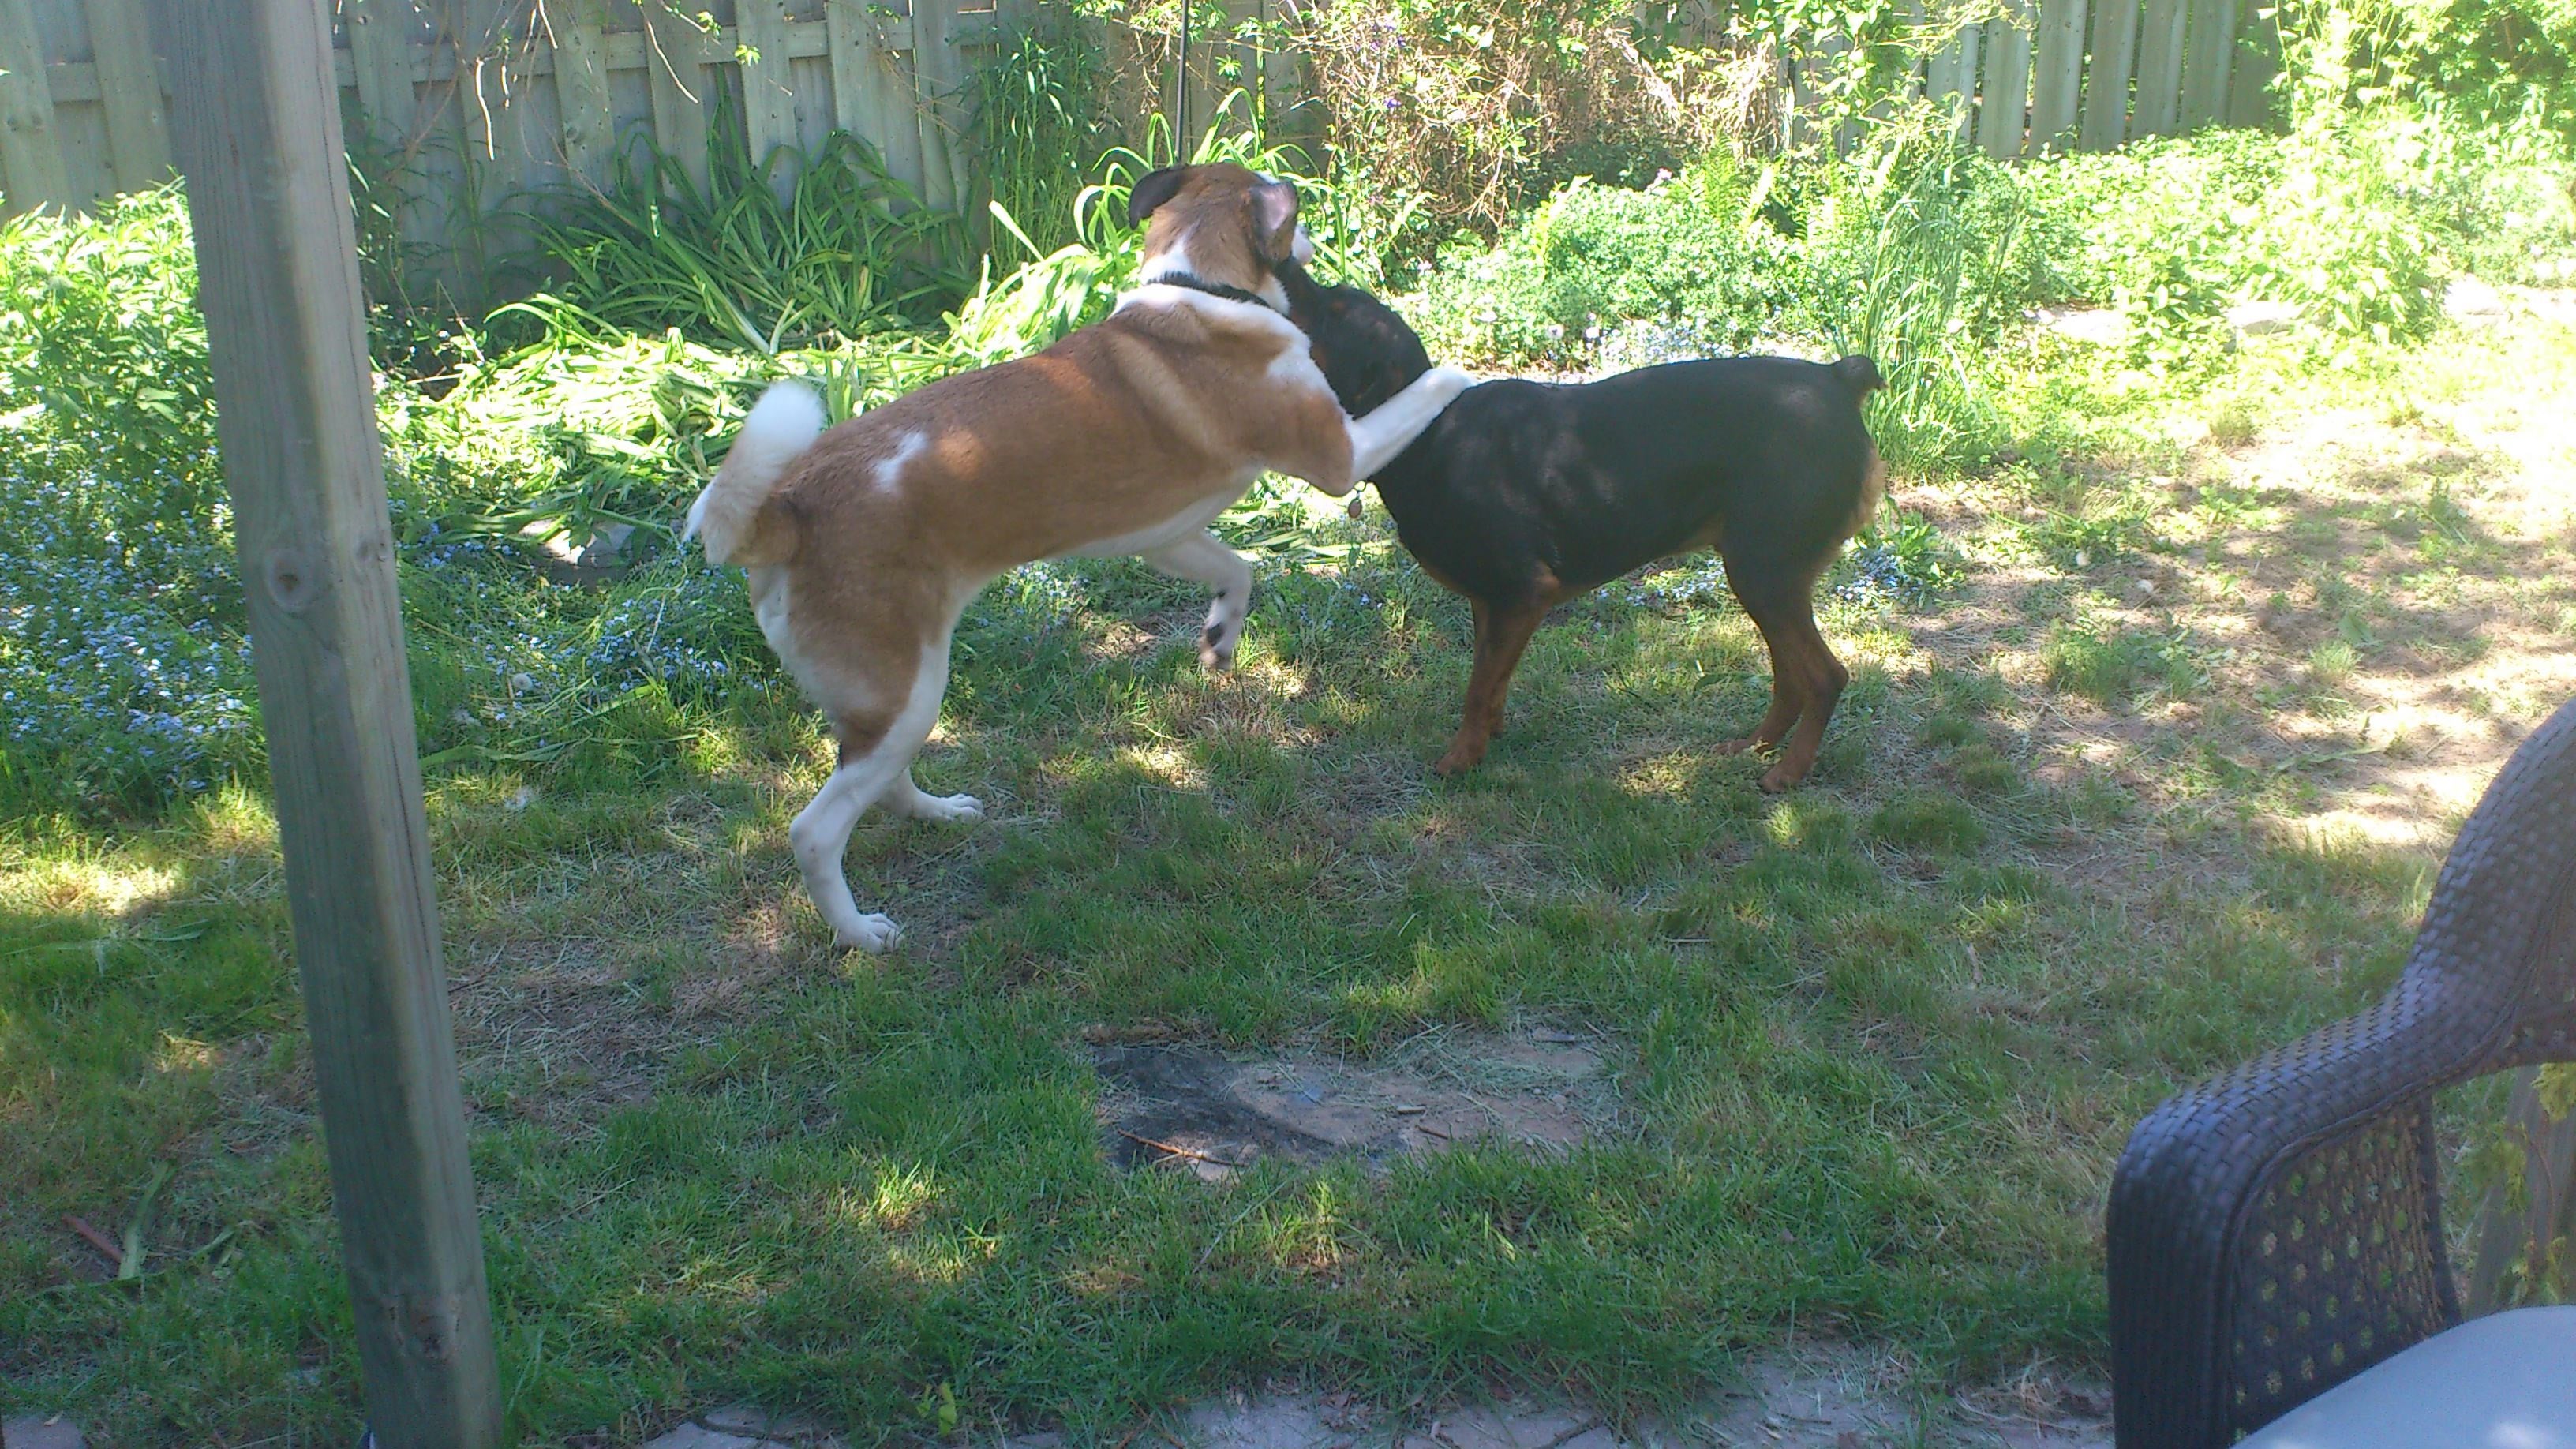 A St. Bernard and a Rottweiler playing